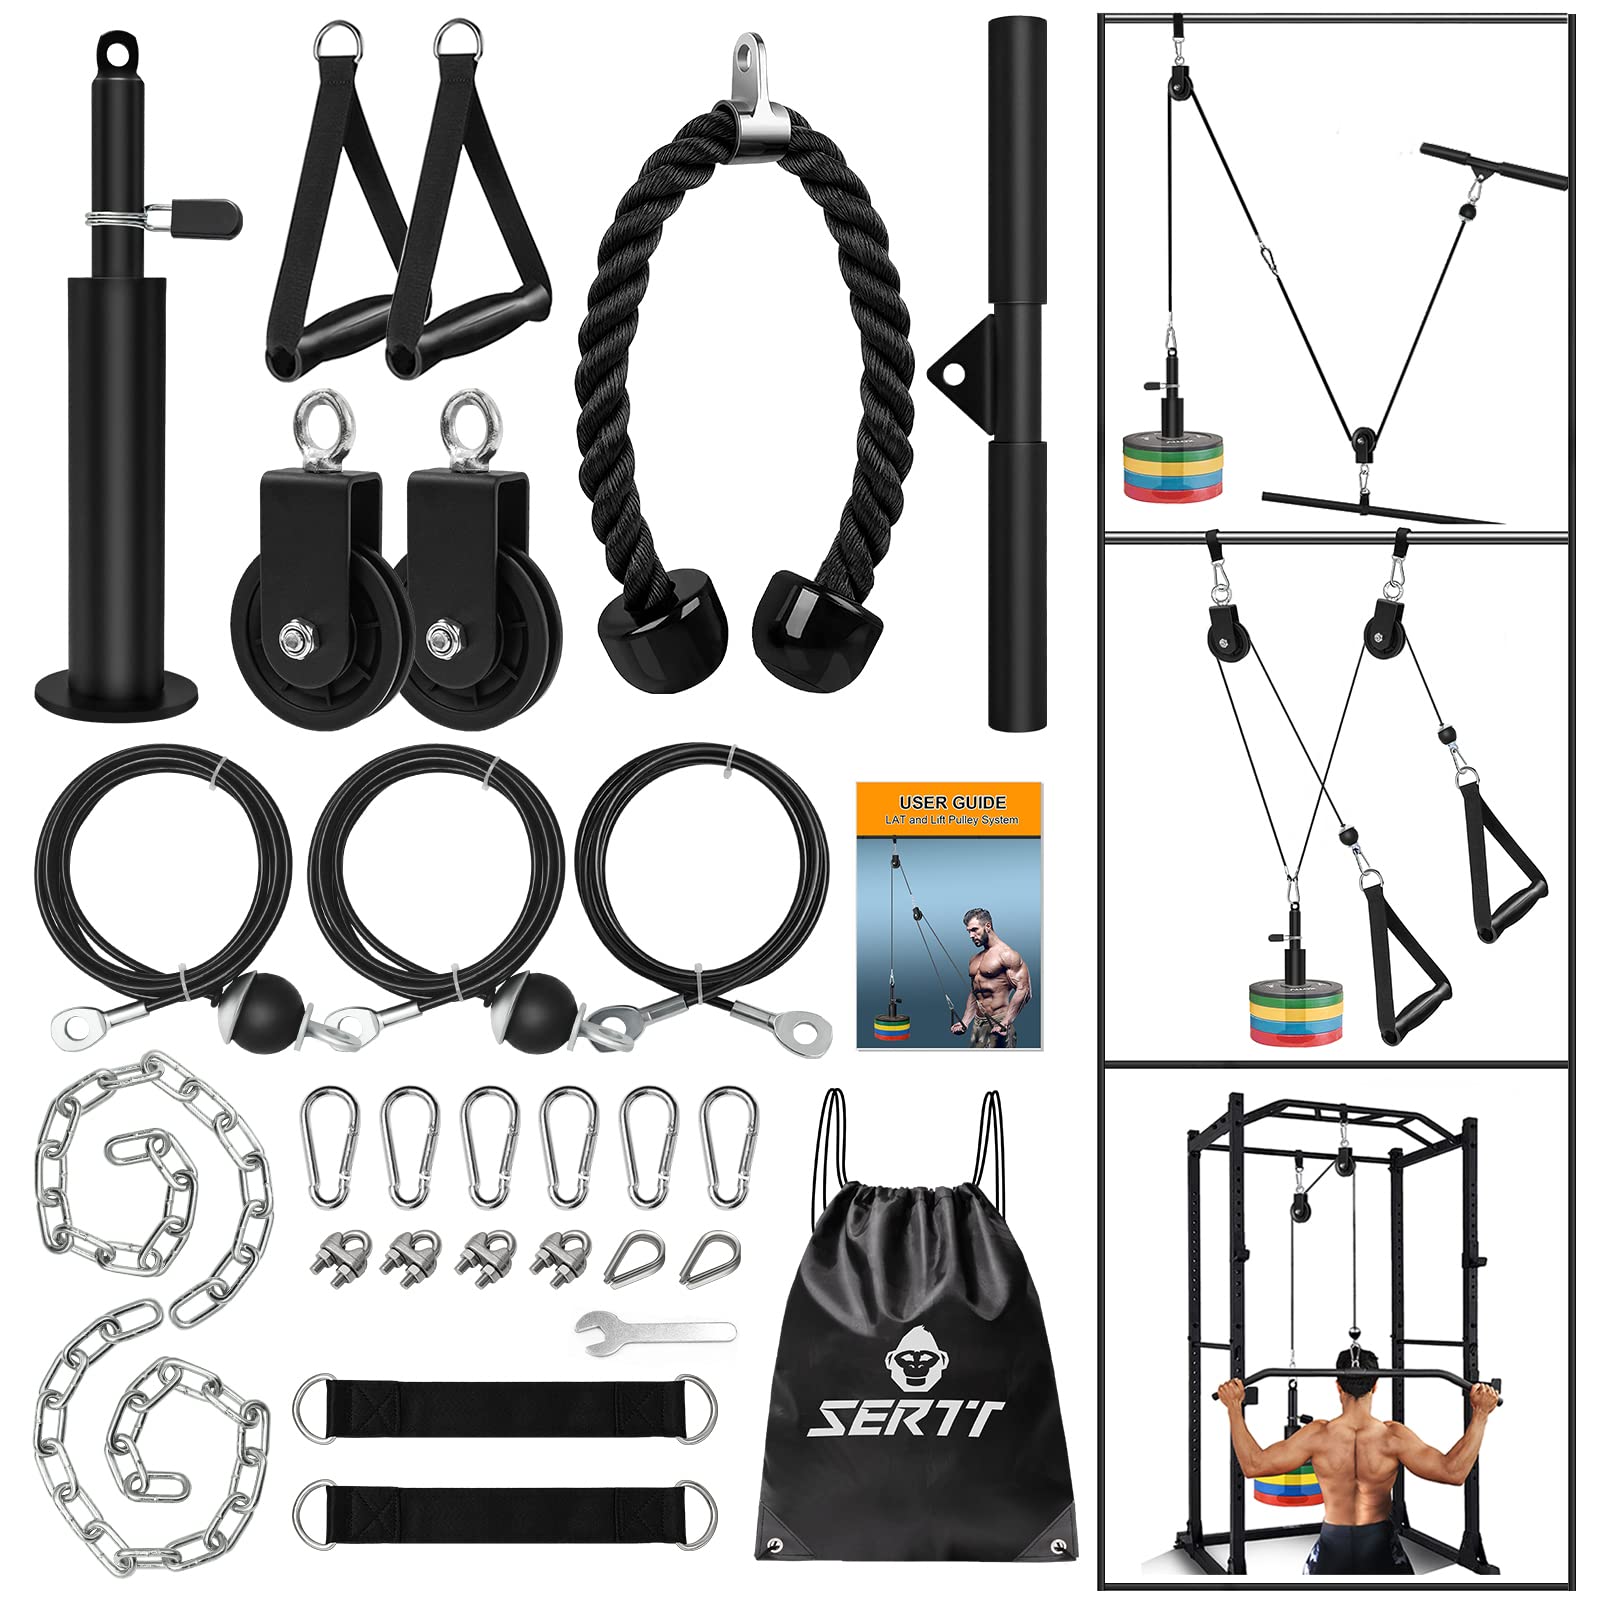 SERTT 重量滑轮系统健身房，升级版电缆滑轮附件，适用于健身房 LAT 下拉、二头肌弯举、三头肌、手臂锻炼 - 重量滑轮系统家庭健身房附加设备